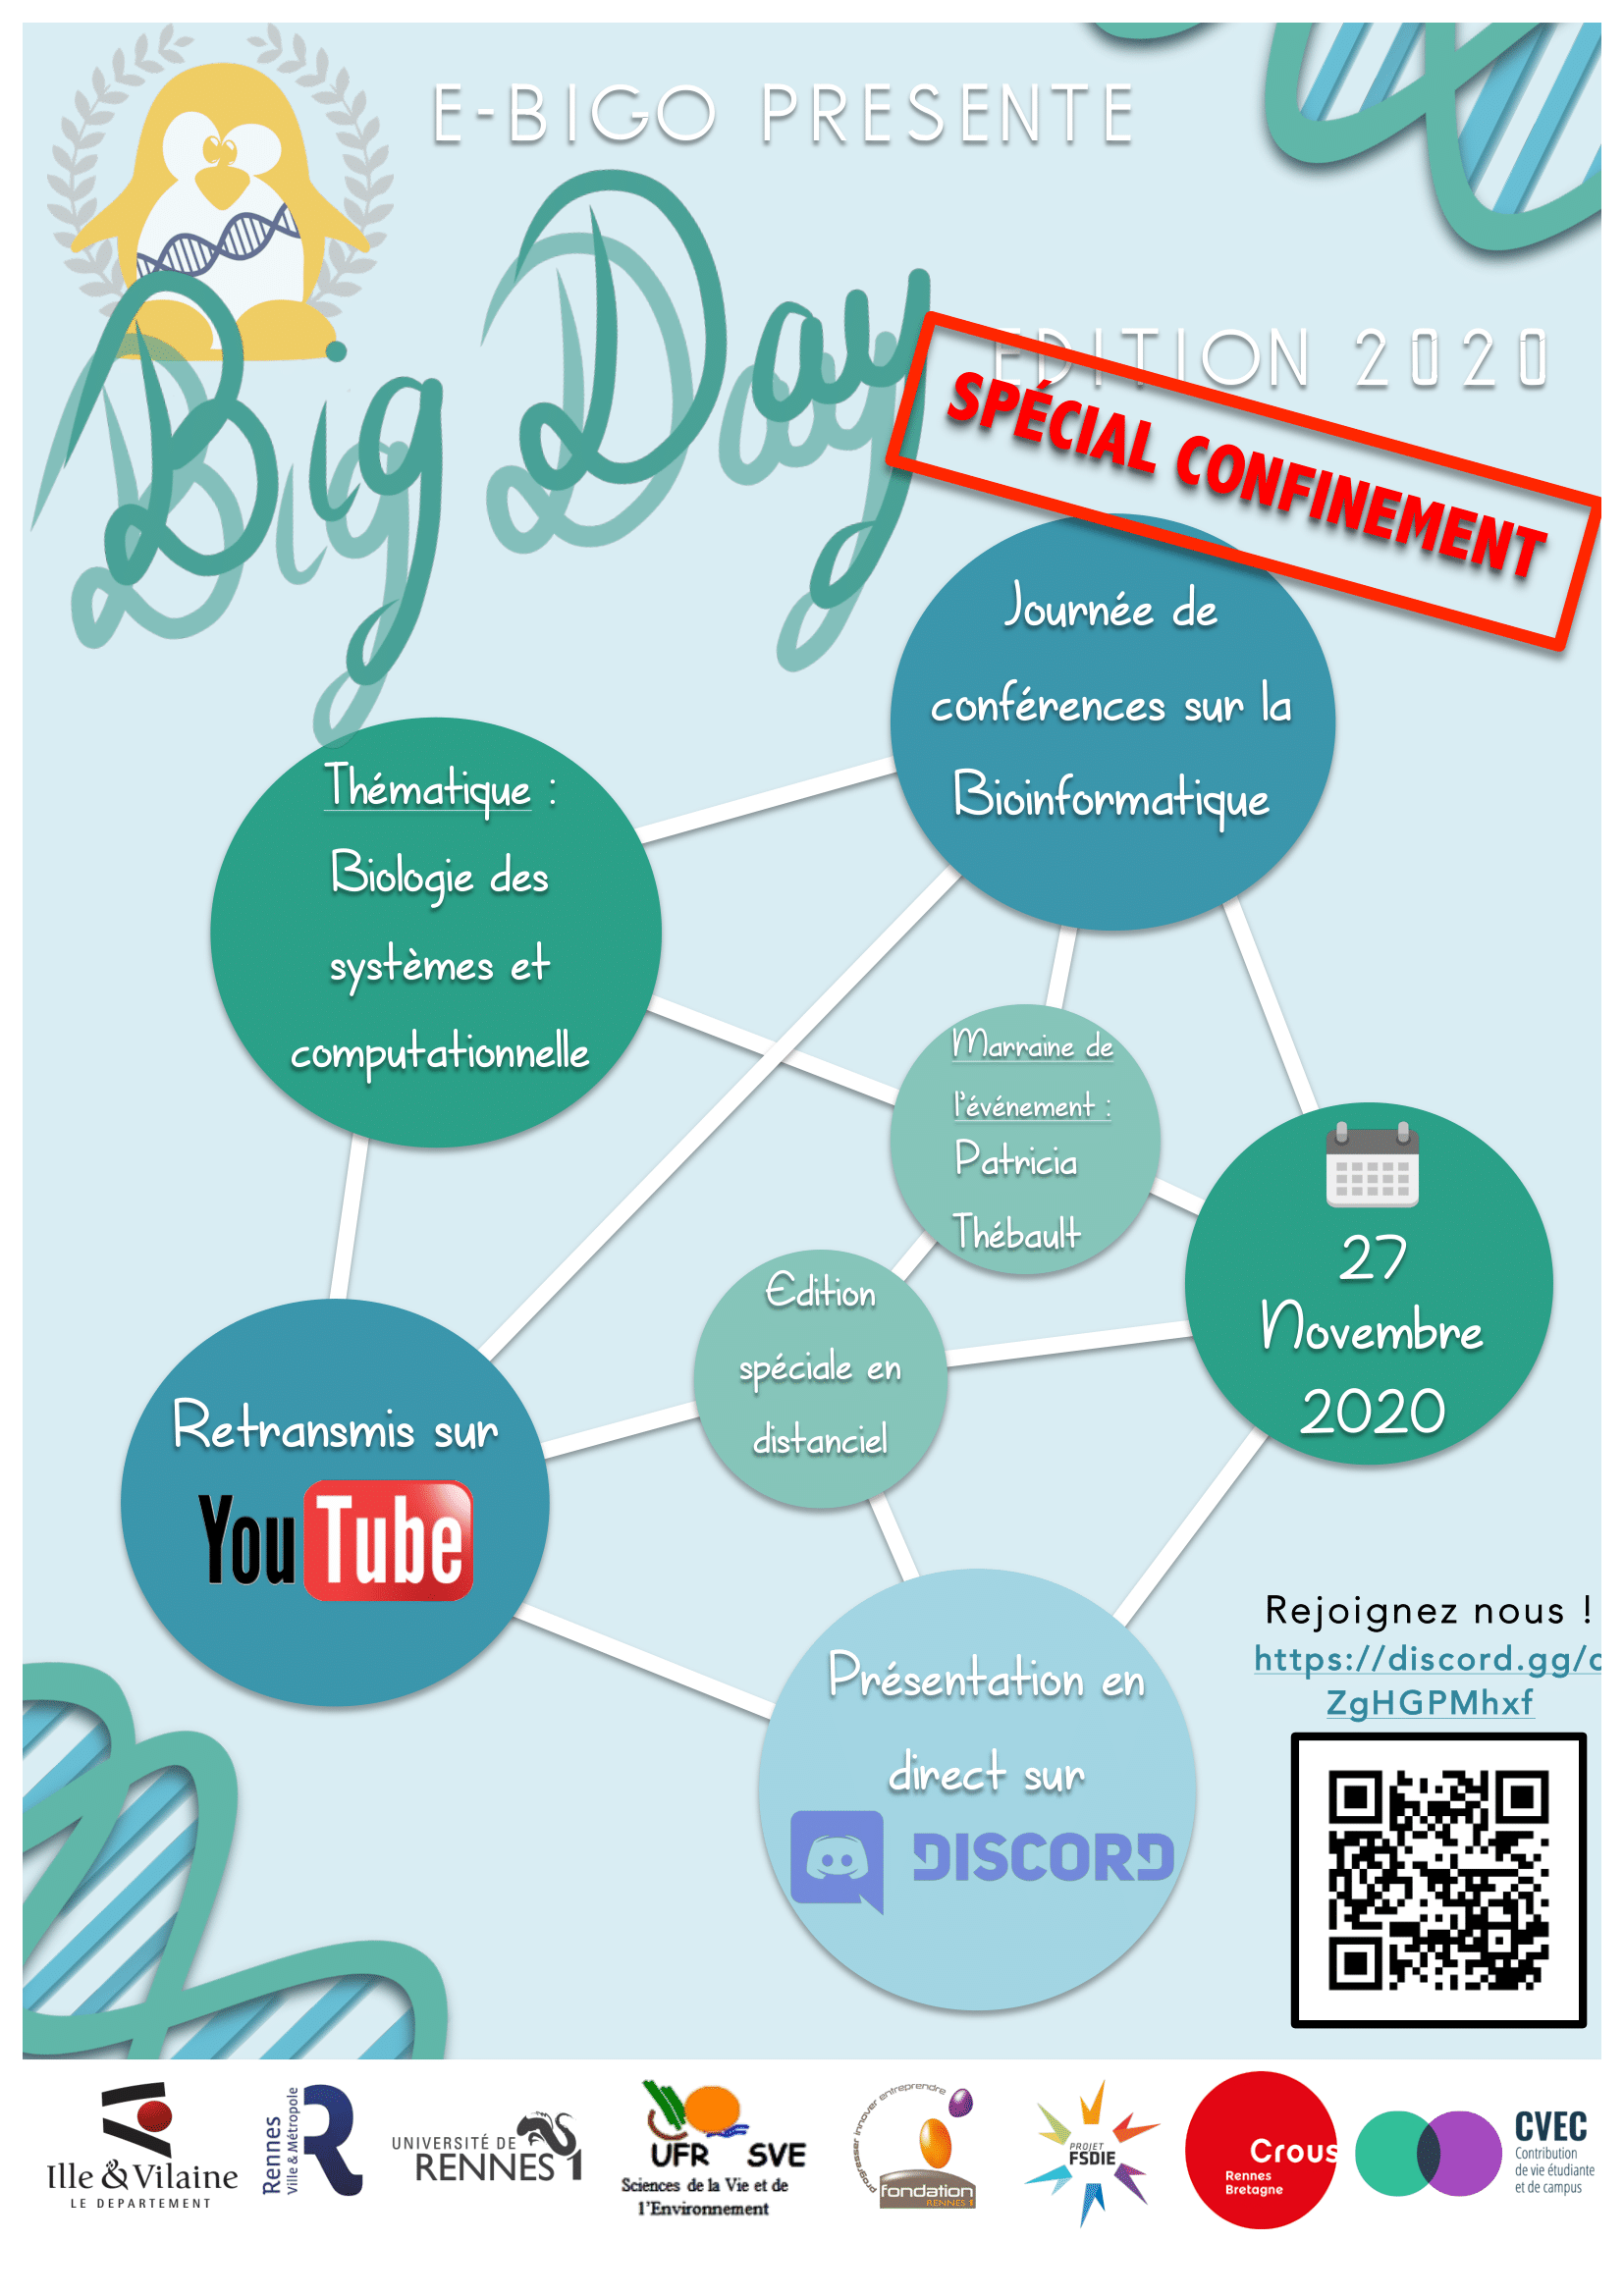 Big Day 2020 : Invitation à un événement de partage autour de la bioinformatique